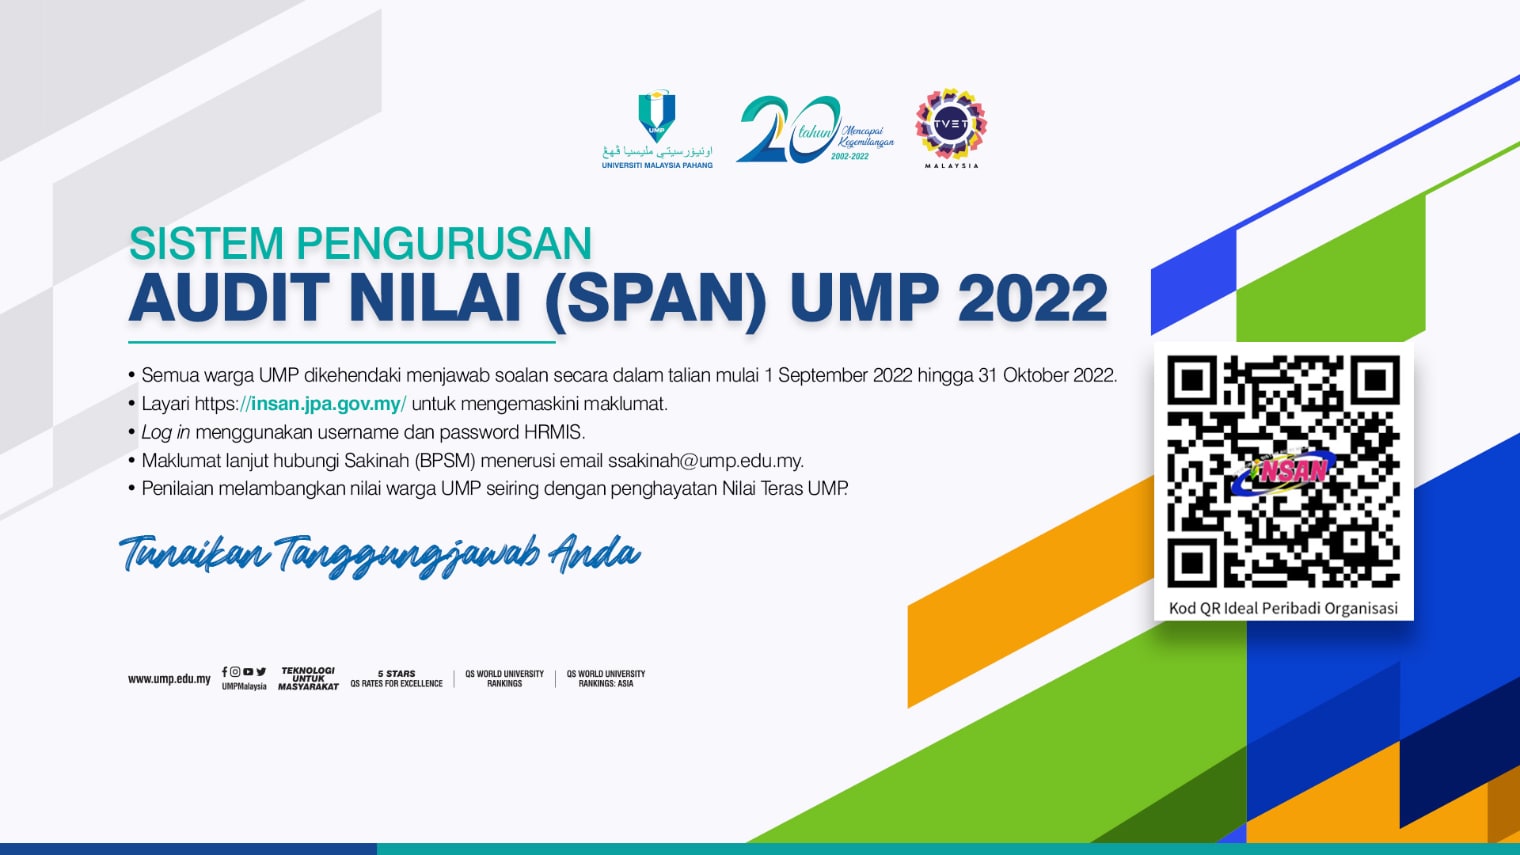 span-ump-2022